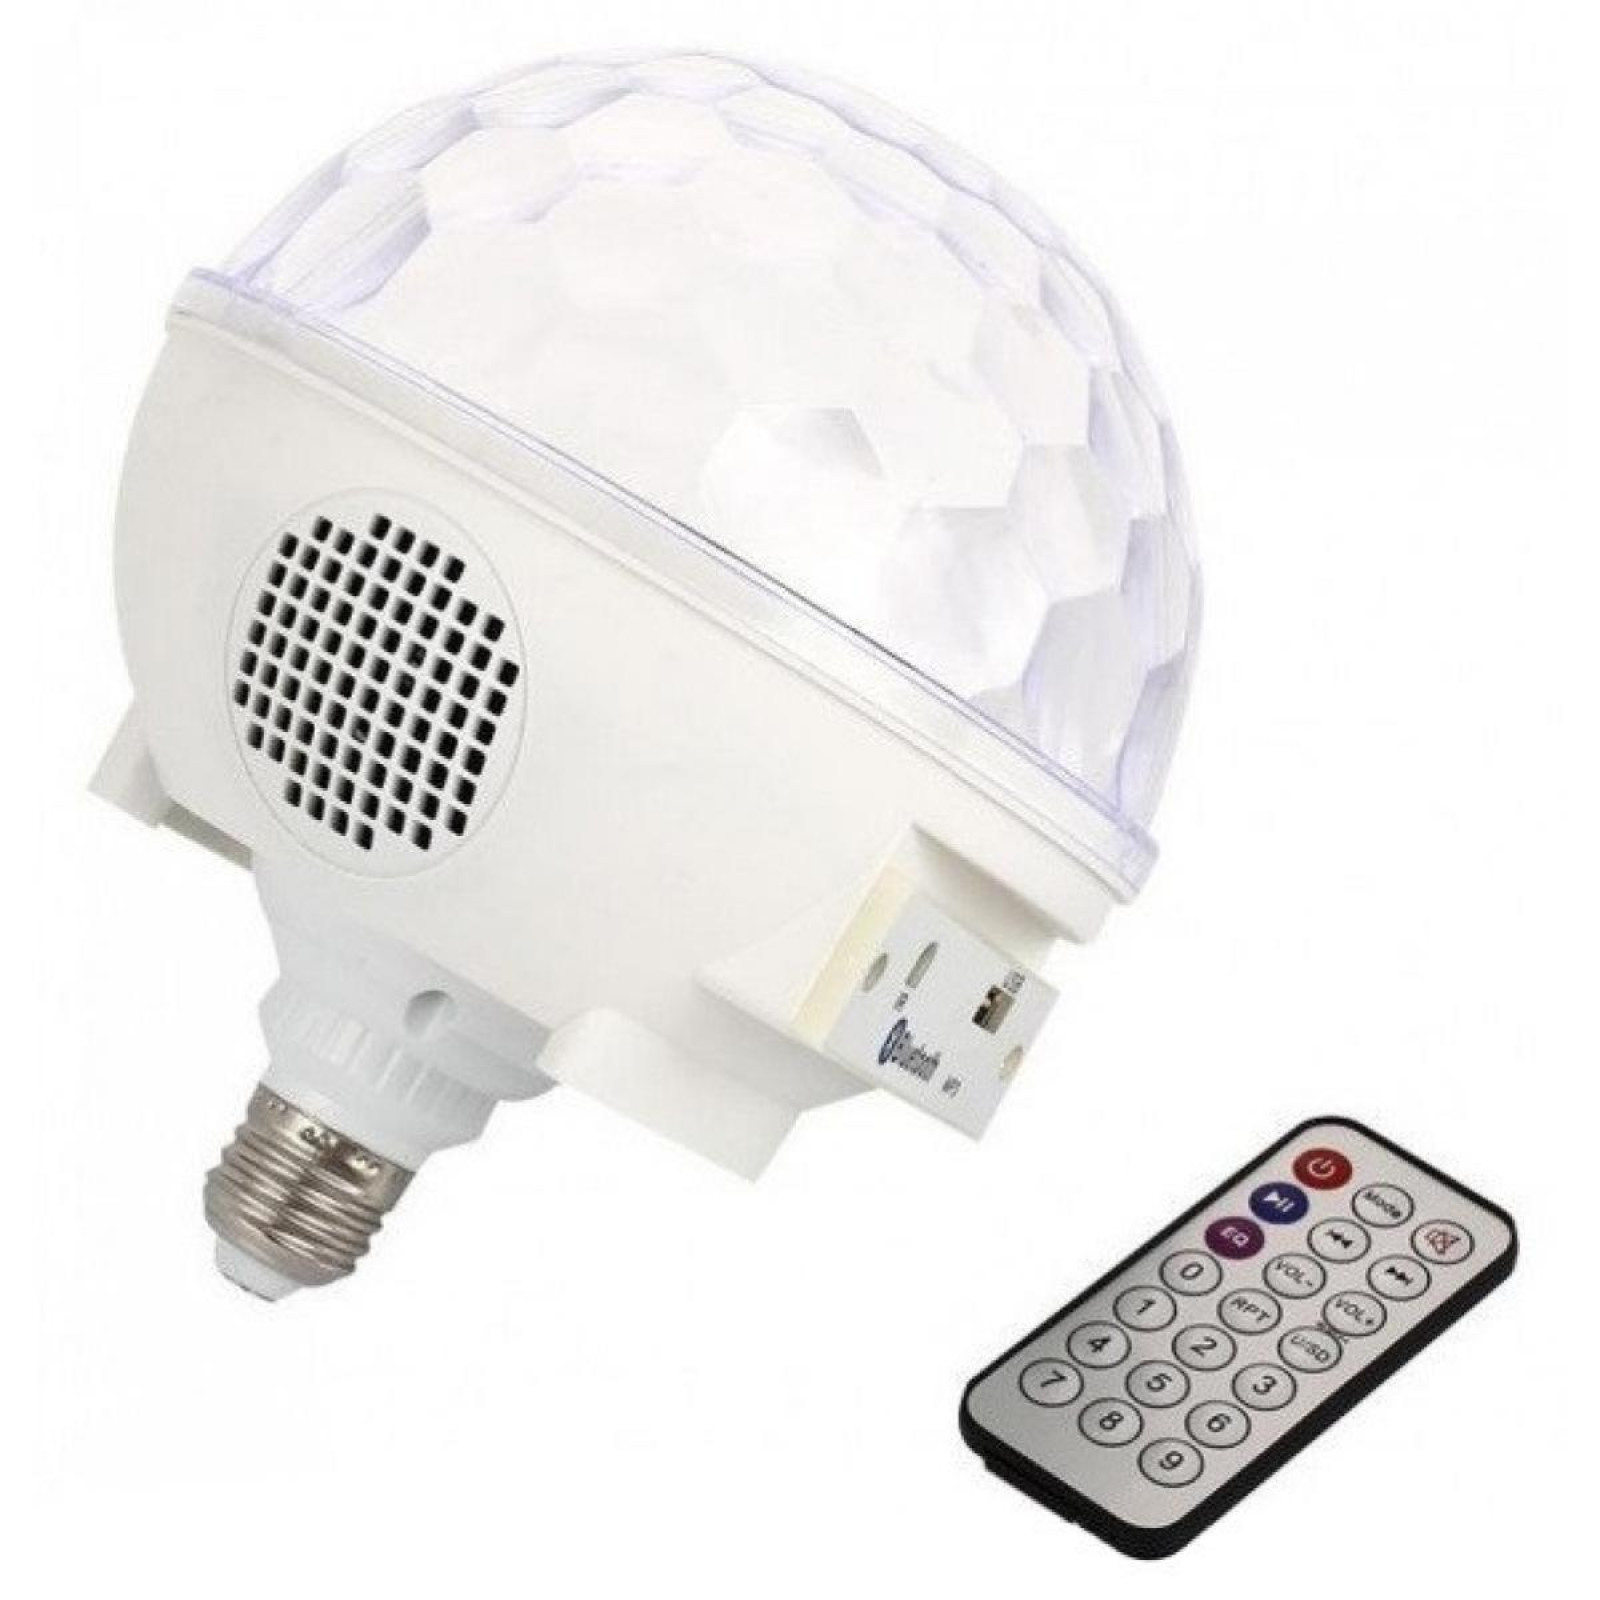 Диско шар в патрон GBX LED Crystal magic ball light E27 997 BT Bluetooth 179794